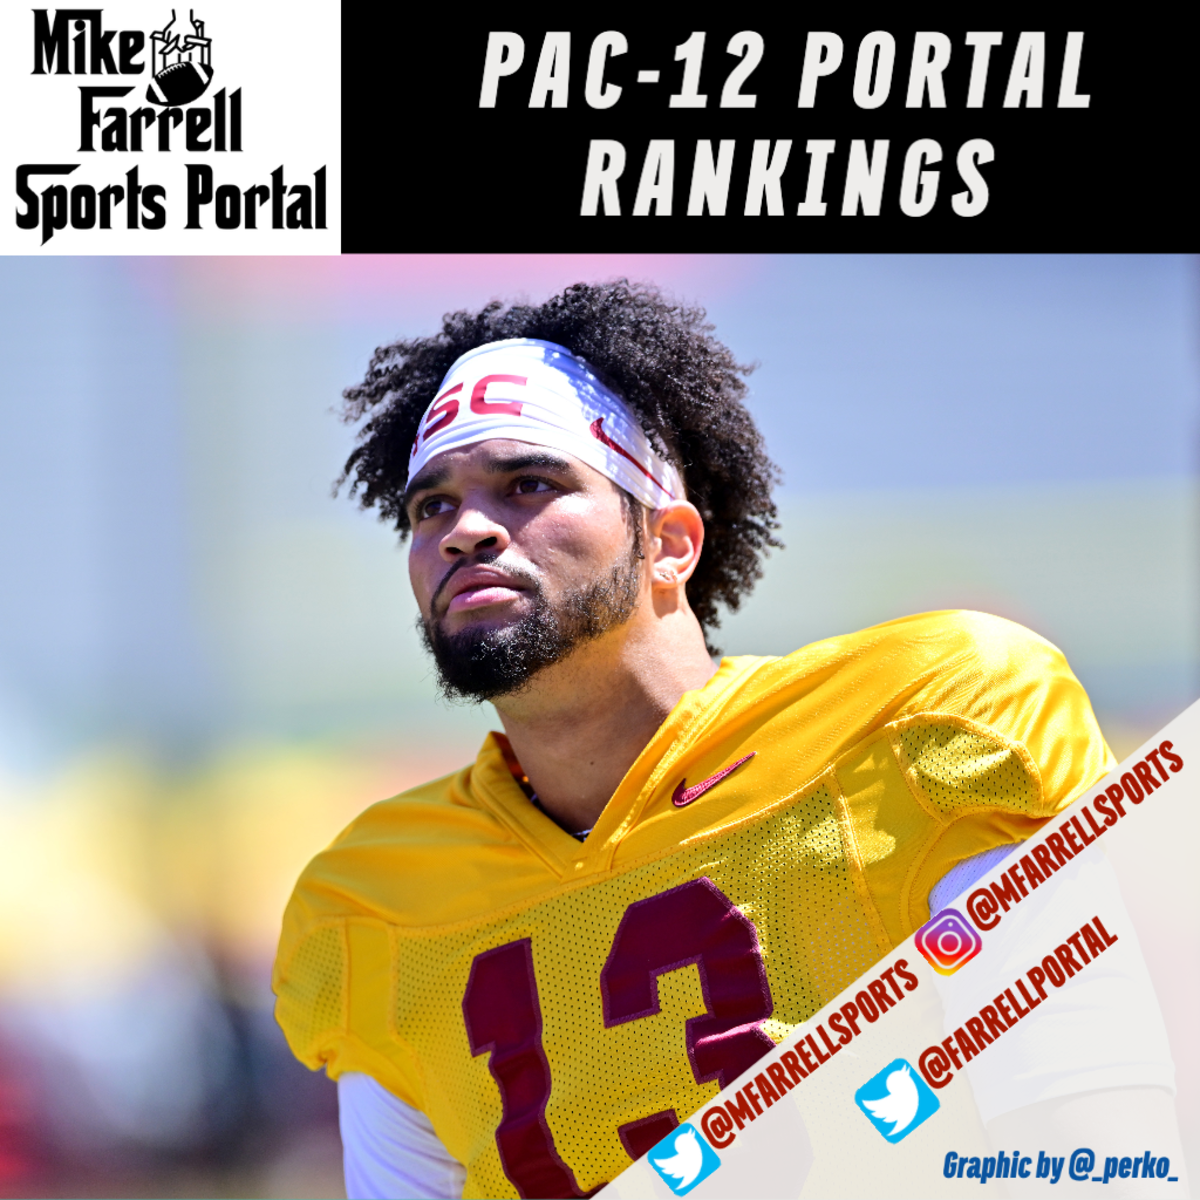 Pac-12 Portal Rankings